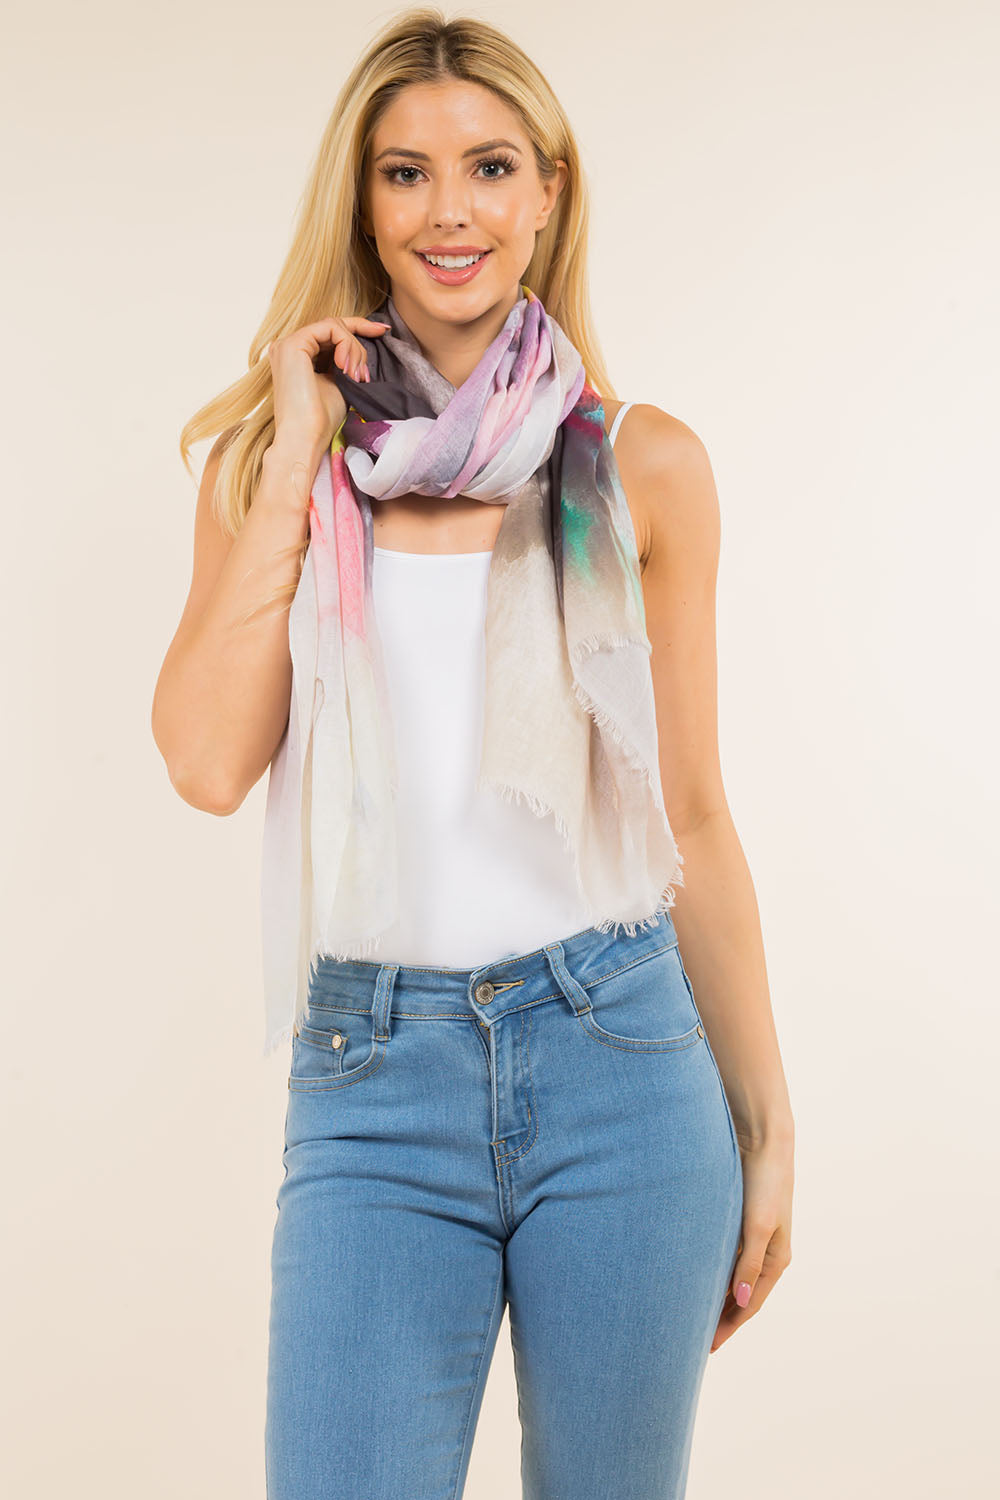 GPO-0002 multi color ombre scarf